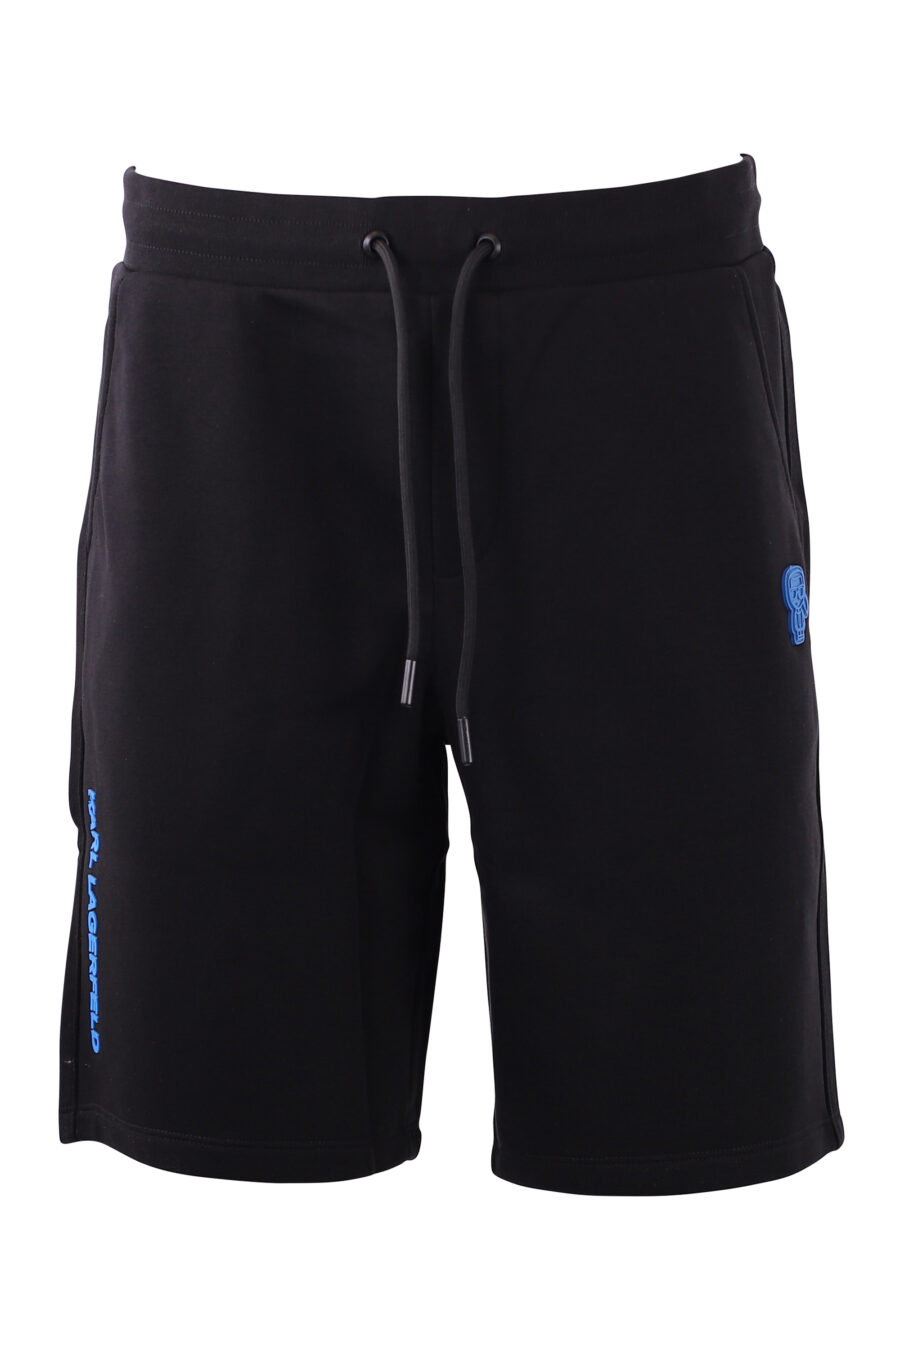 Pantalón corto de chandal negro con logo azul - IMG 8583